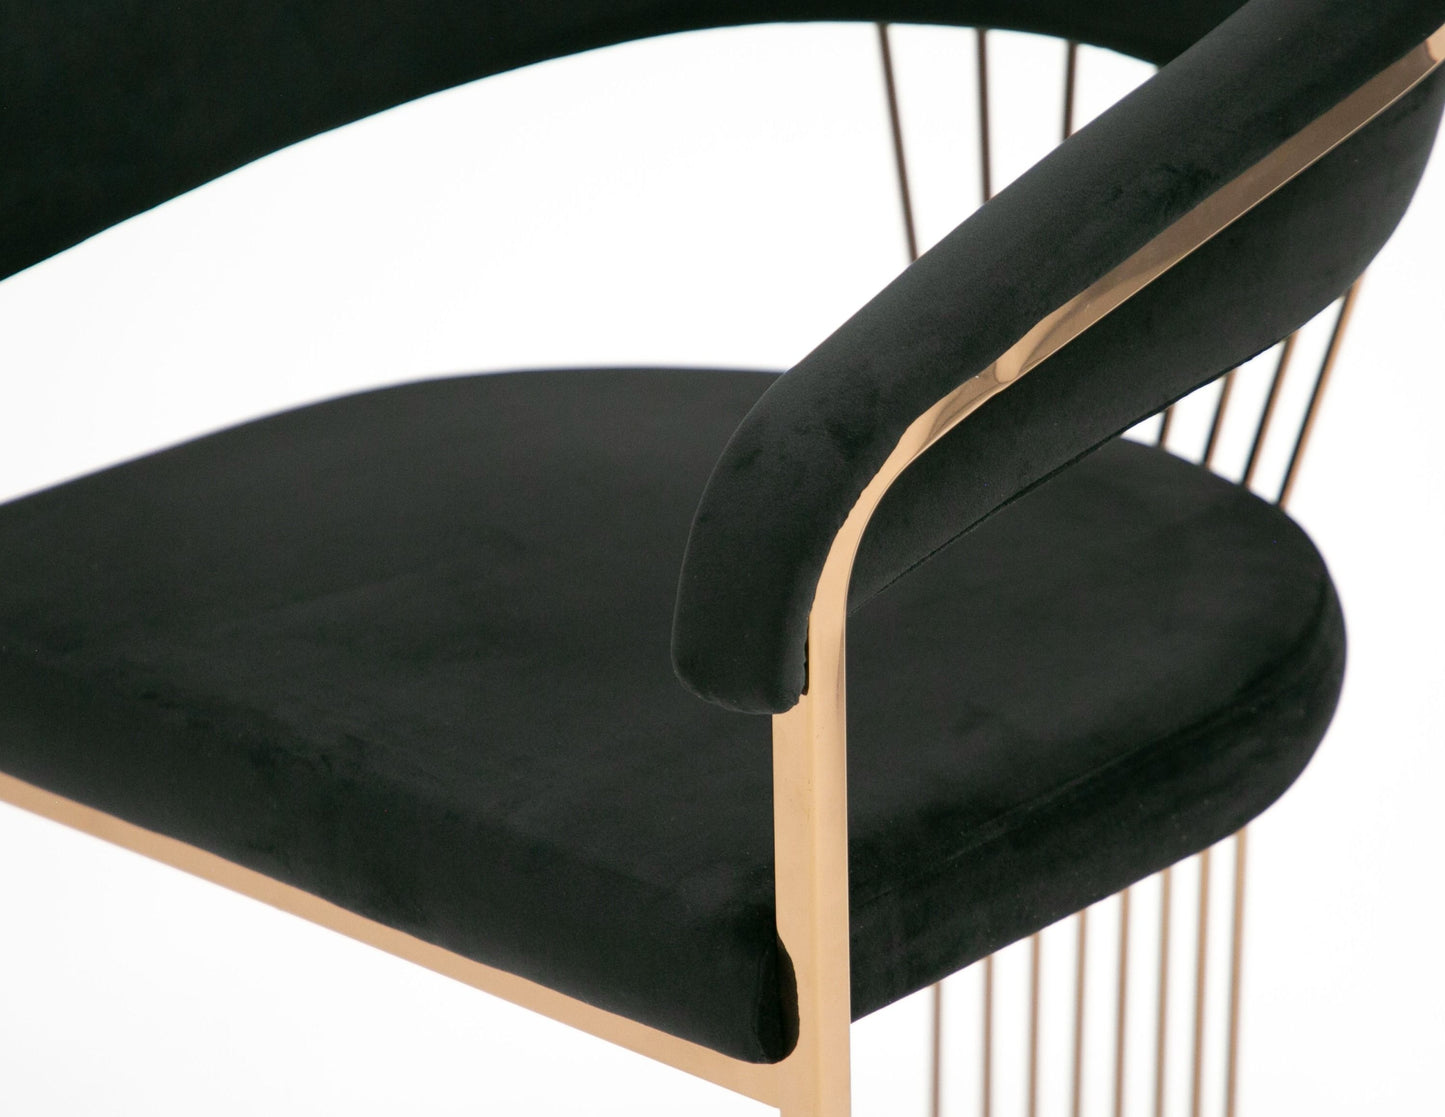 Modrest Linda - Modern Black Velvet and Rosegold Dining Chair